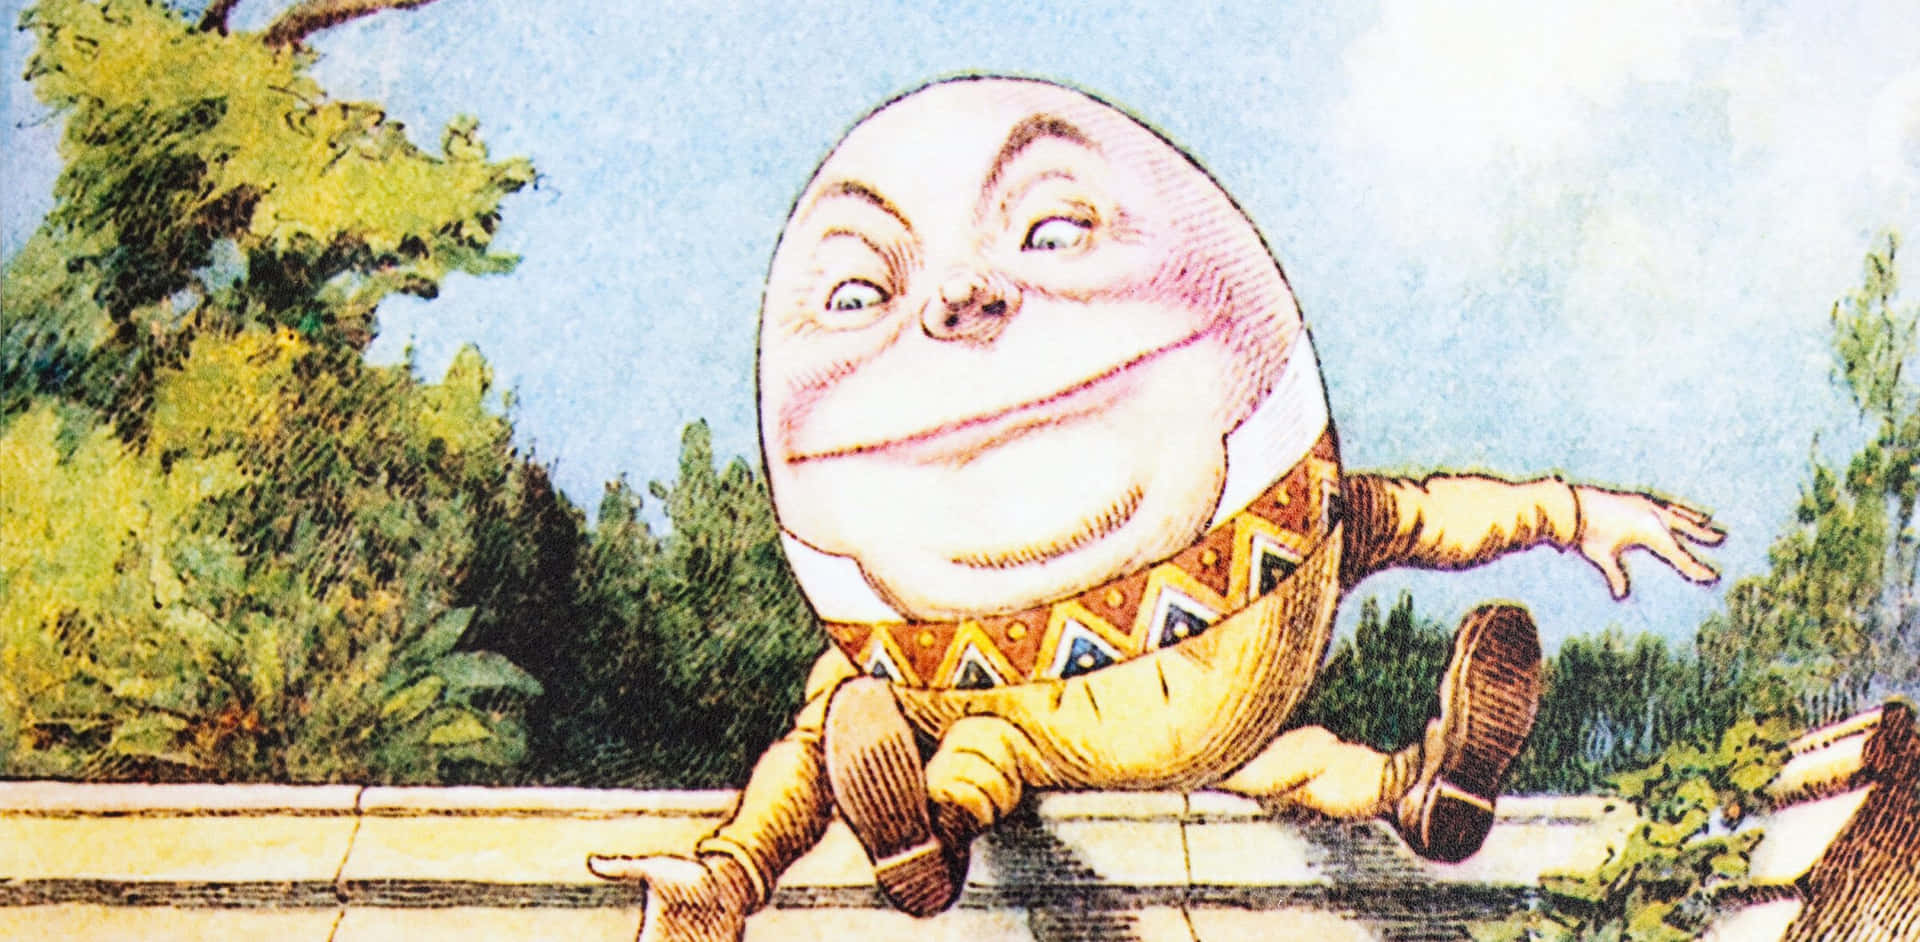 Imagende Humpty Dumpty Vistiendo Ropa Amarilla